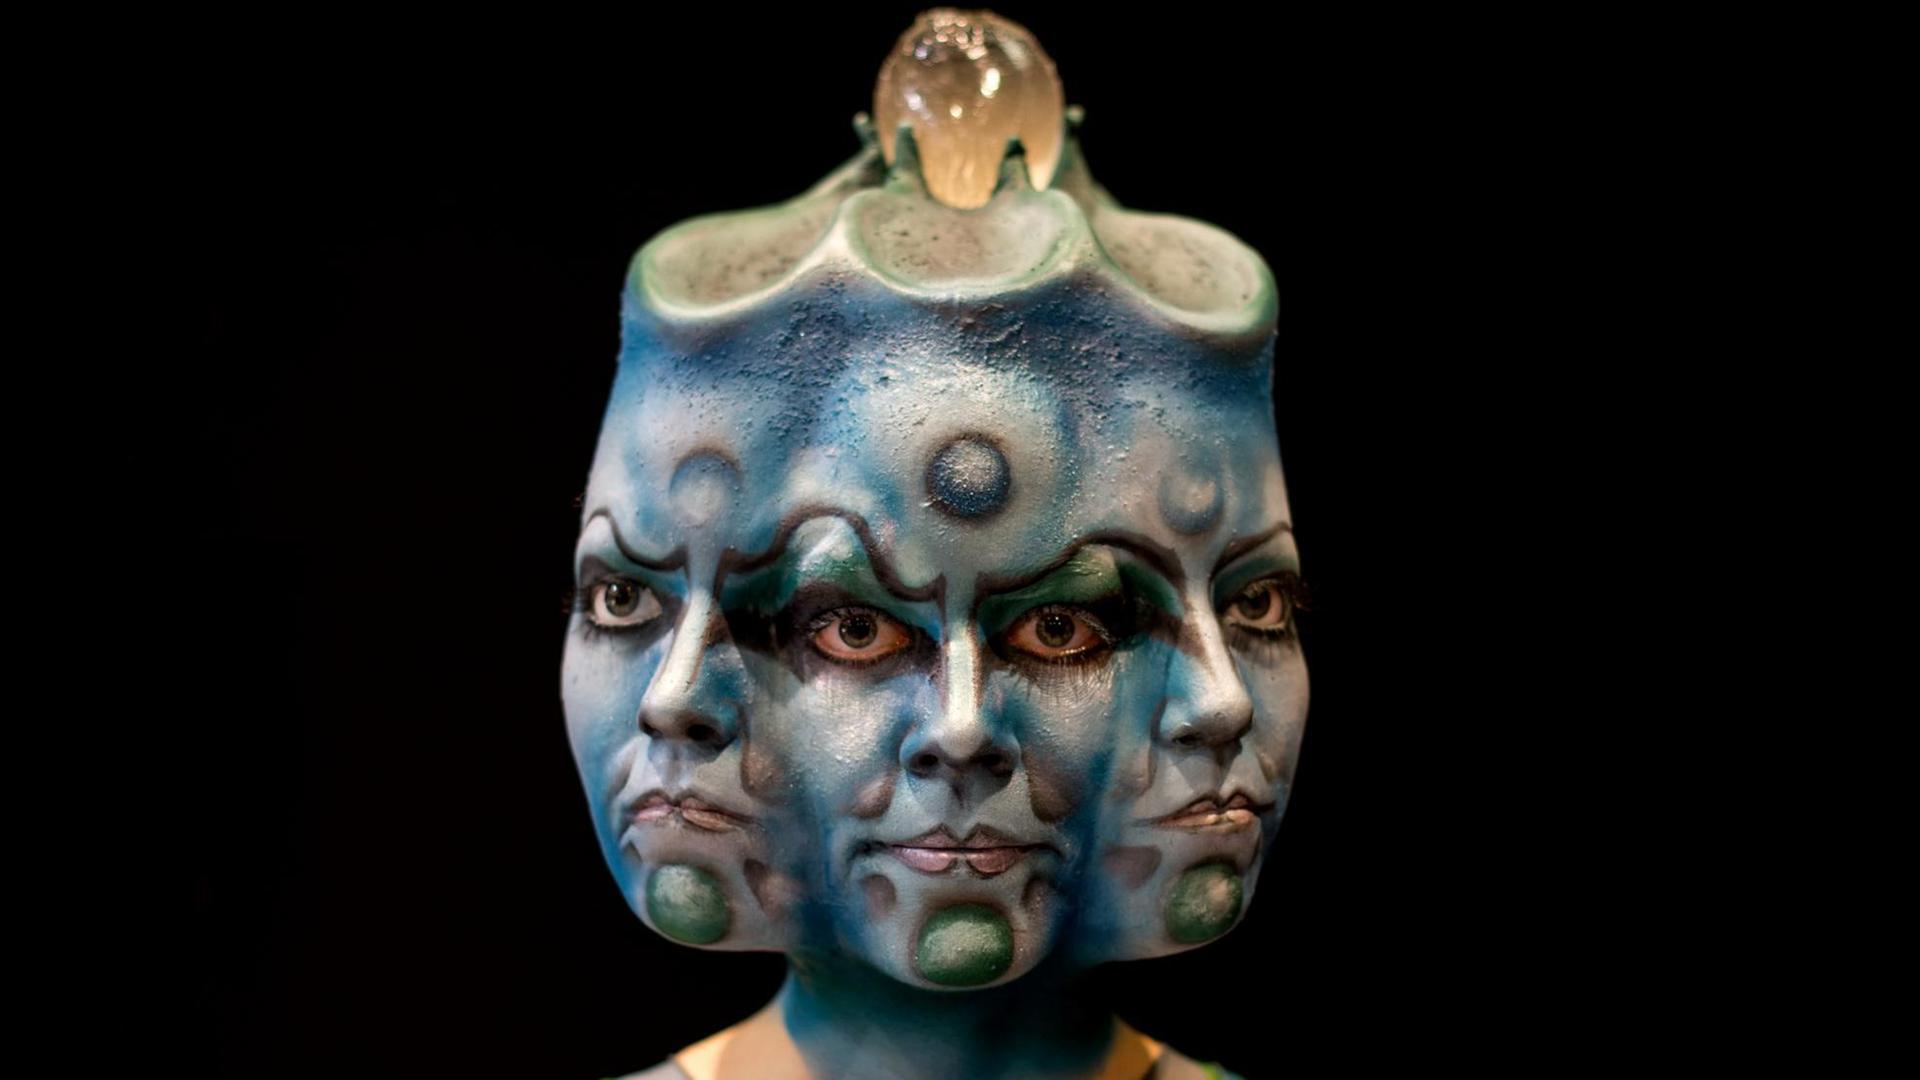 Ein Model präsentiert am 06.03.2016 die Maske von Caroline Gast bei der Deutschen Meisterschaft für Maskenbildner in Ausbildung in Düsseldorf (Nordrhein-Westfalen)